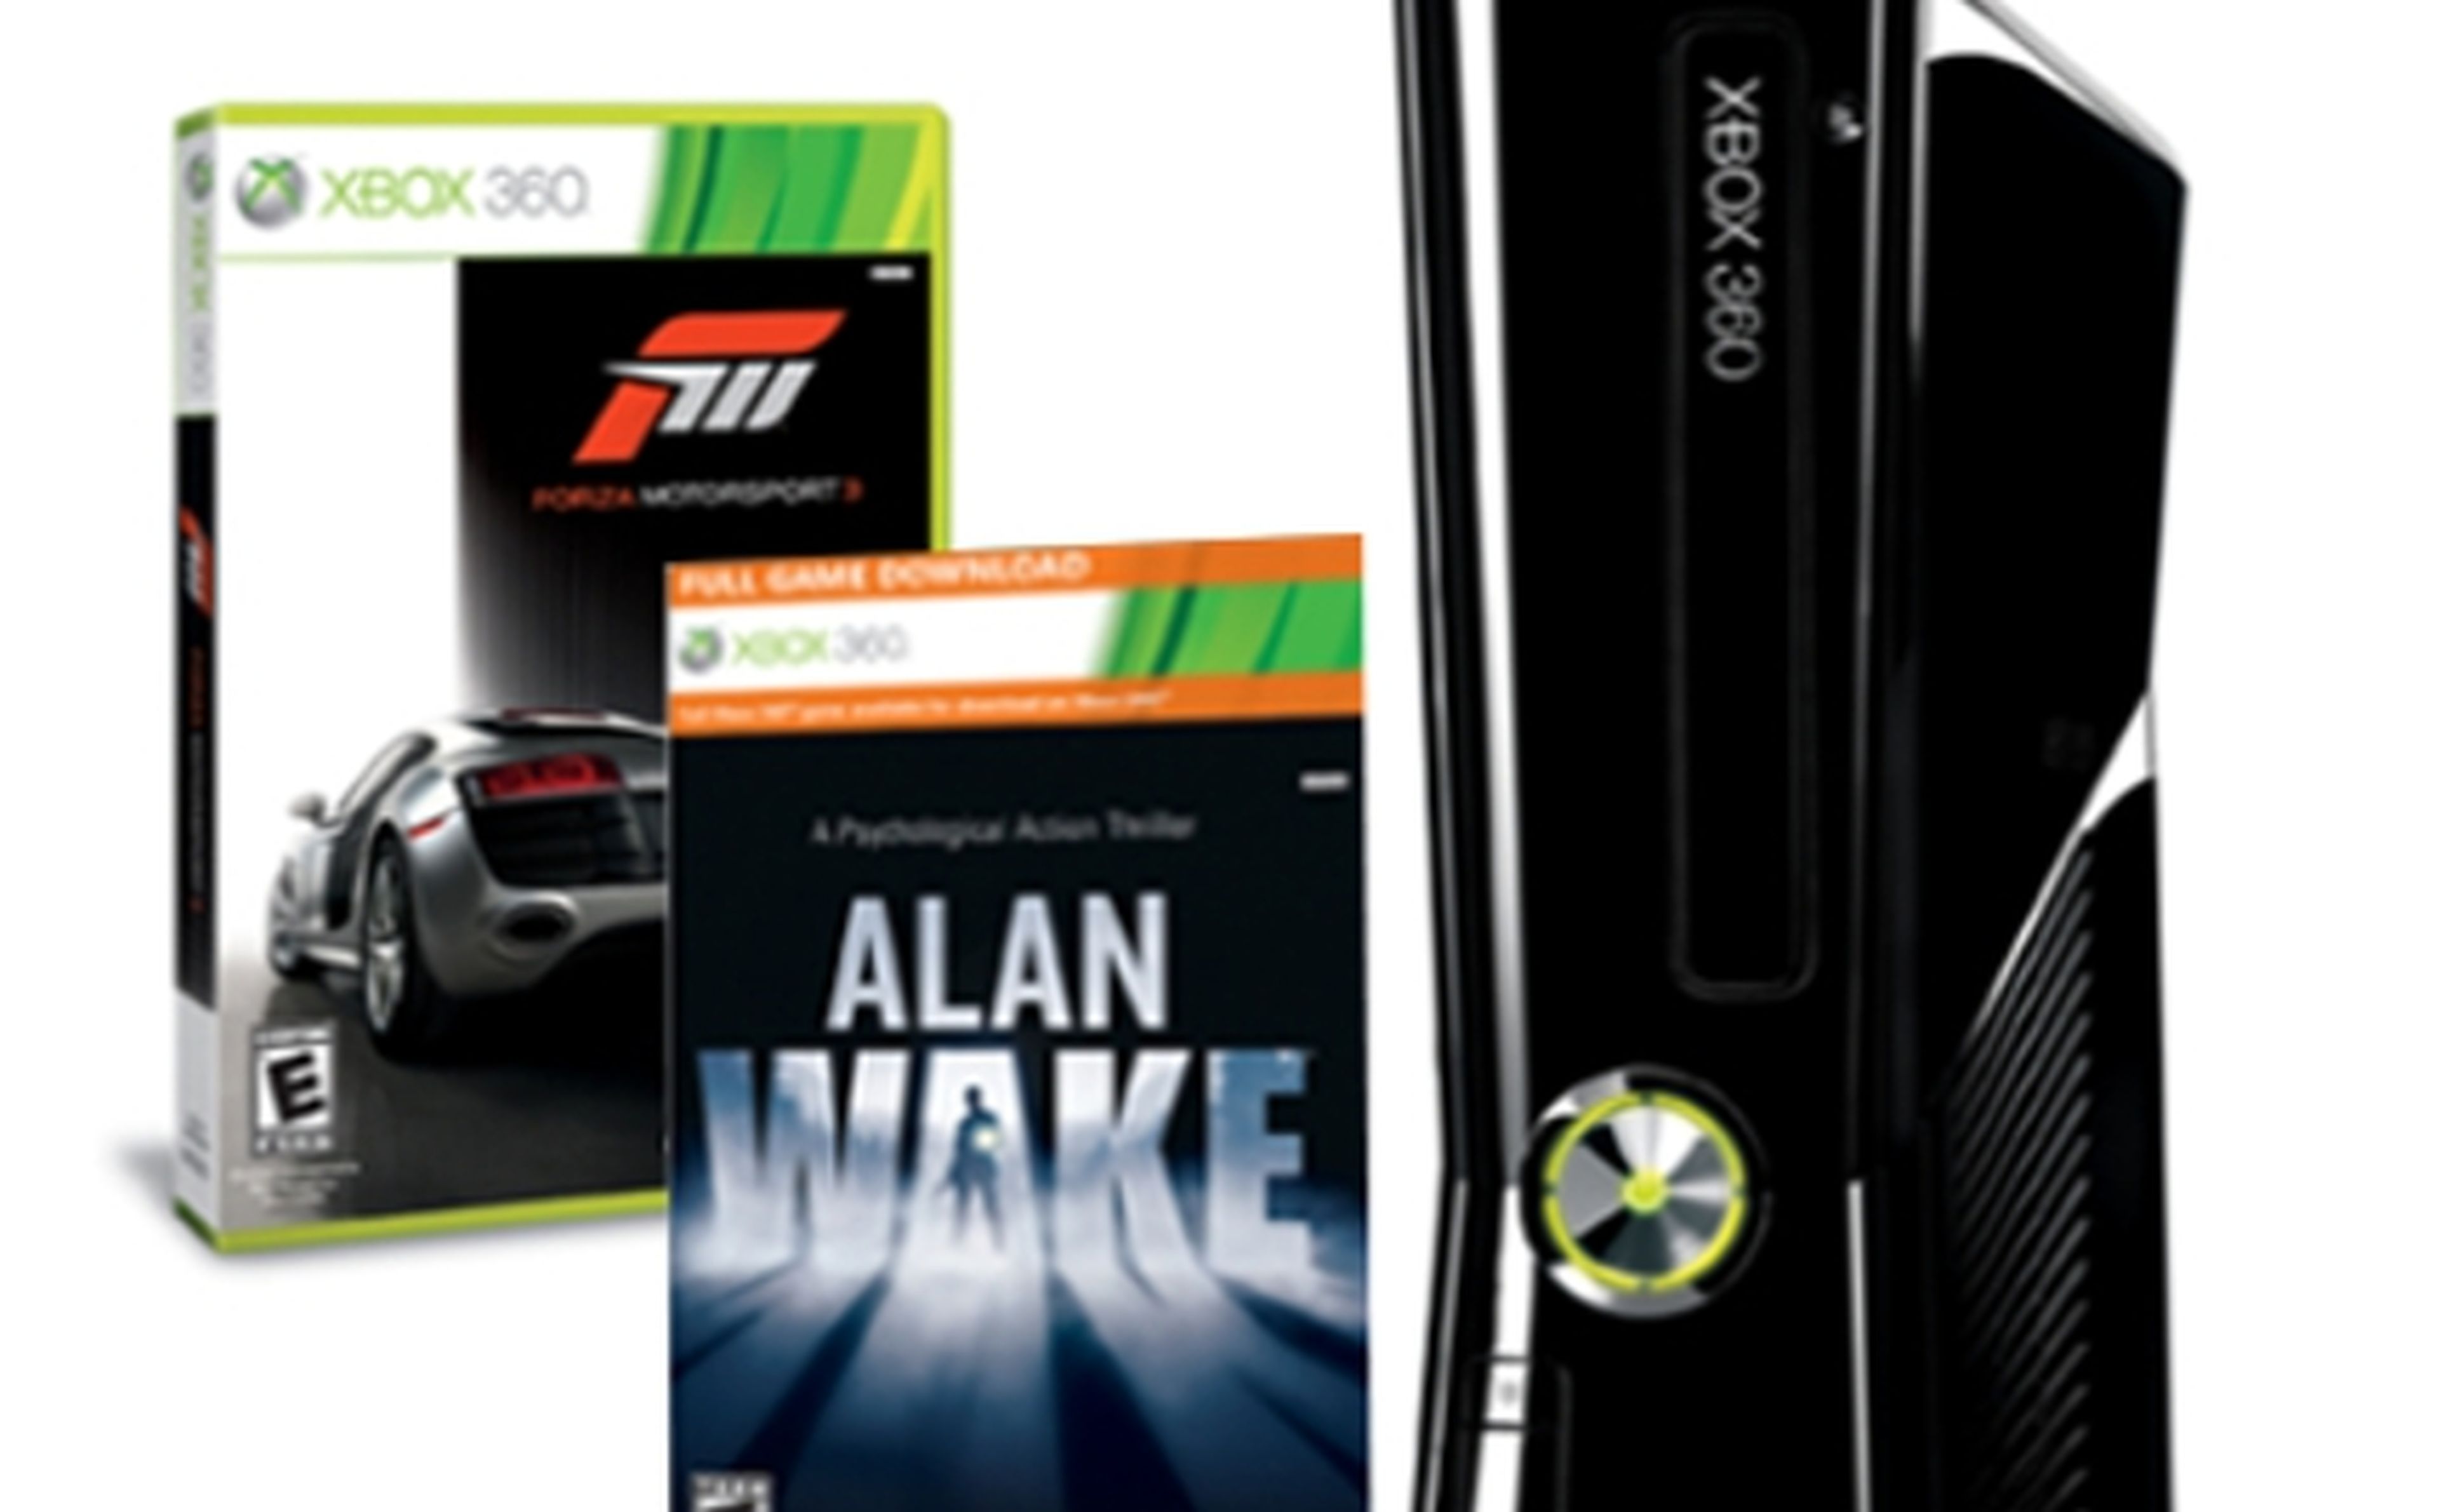 Pack Xbox 360 para Navidad